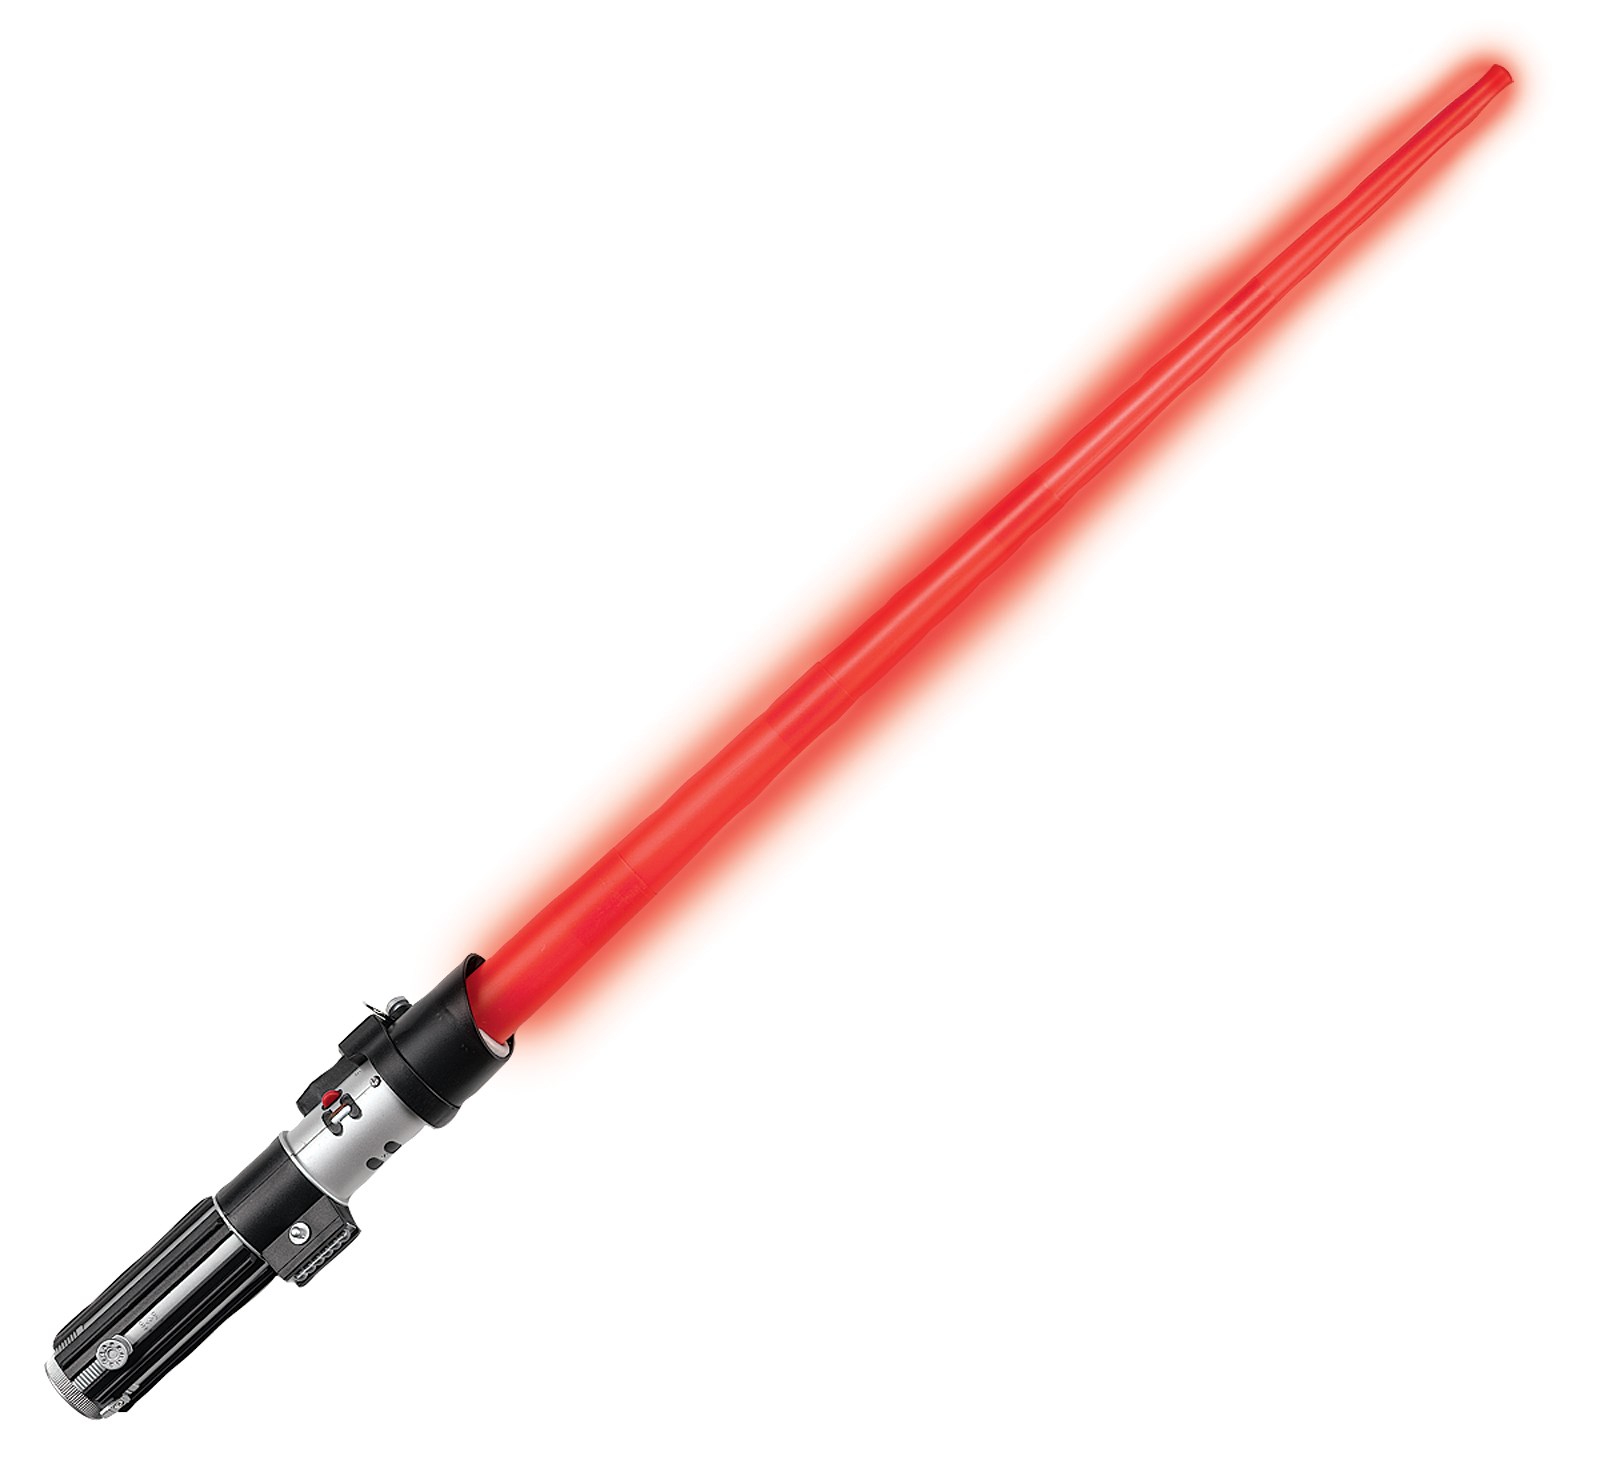 Star Wars Darth Vader Red Lightsaber